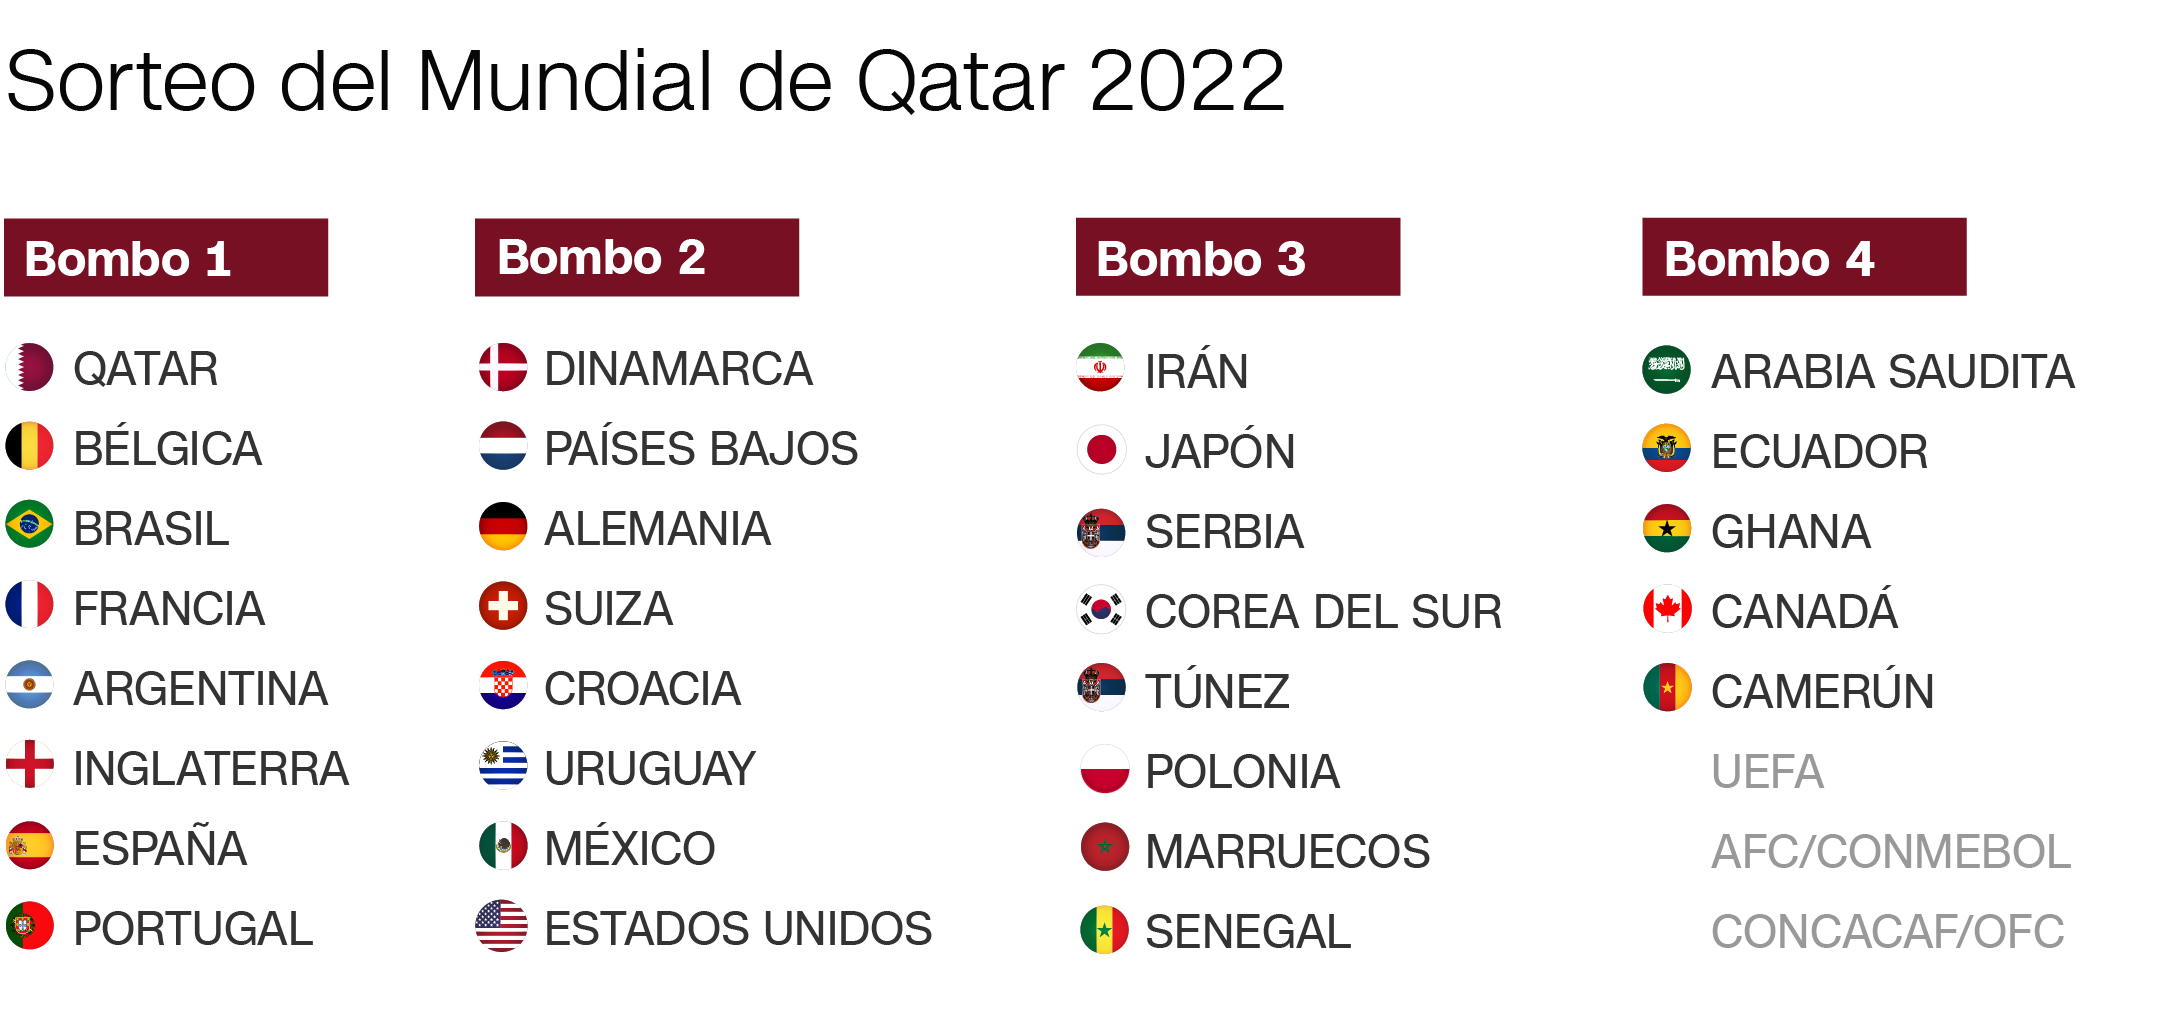 Sorteo del Mundial de Qatar 2022 formato, bombos, horario y cómo ver